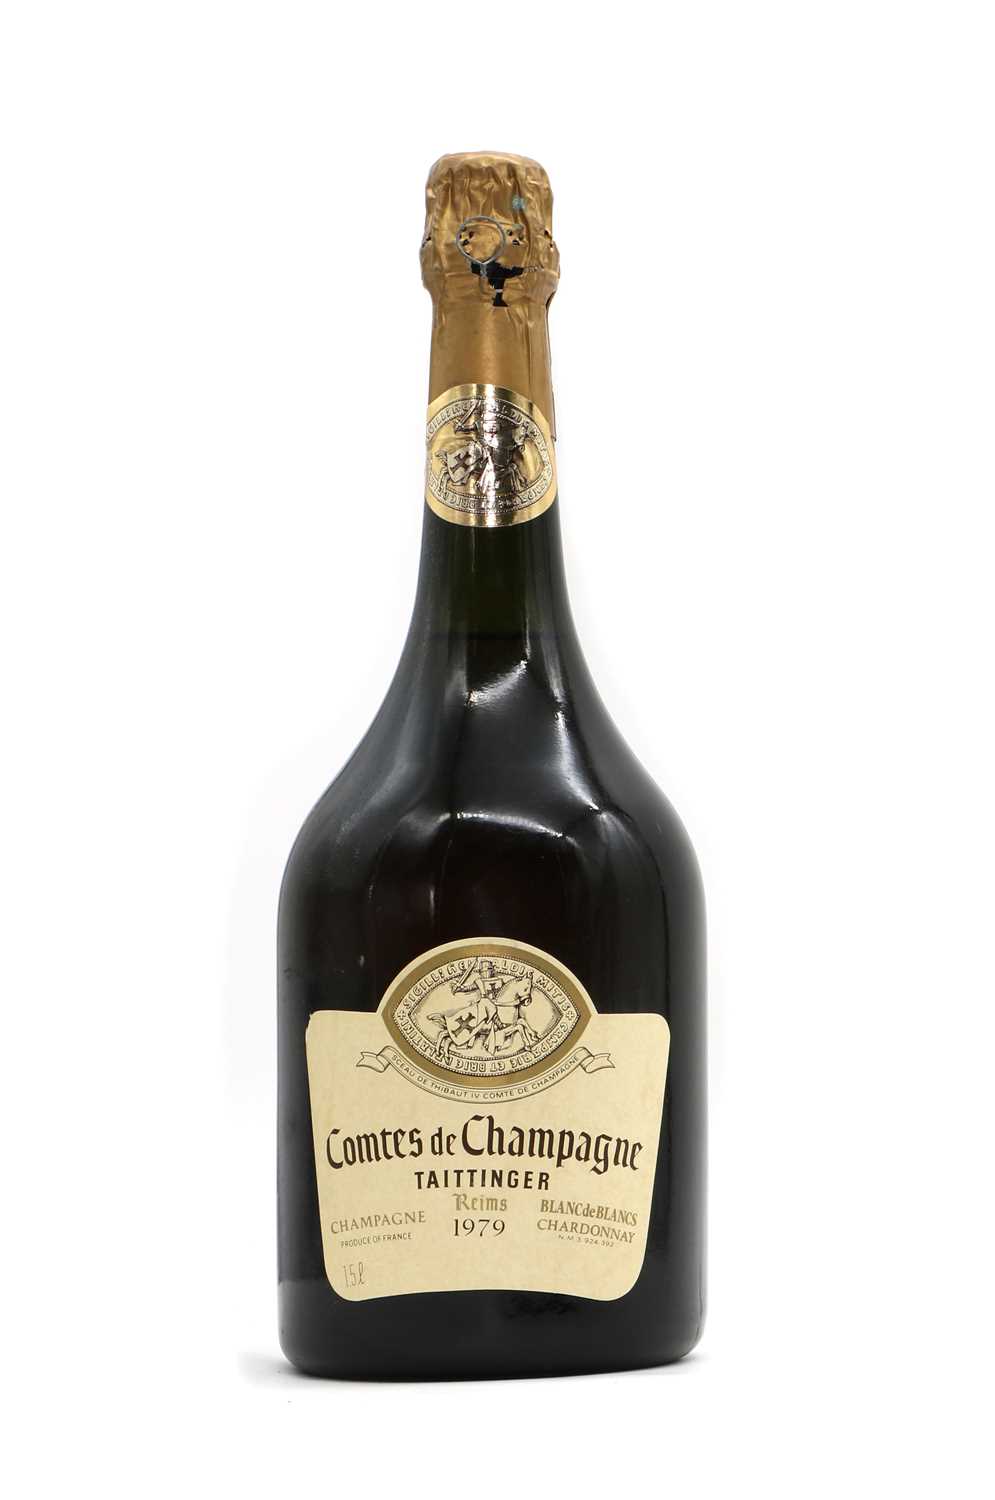 Lot 29 - Taittinger, Comtes de Champagne, Blanc de Blancs, 1979 (1 magnum)